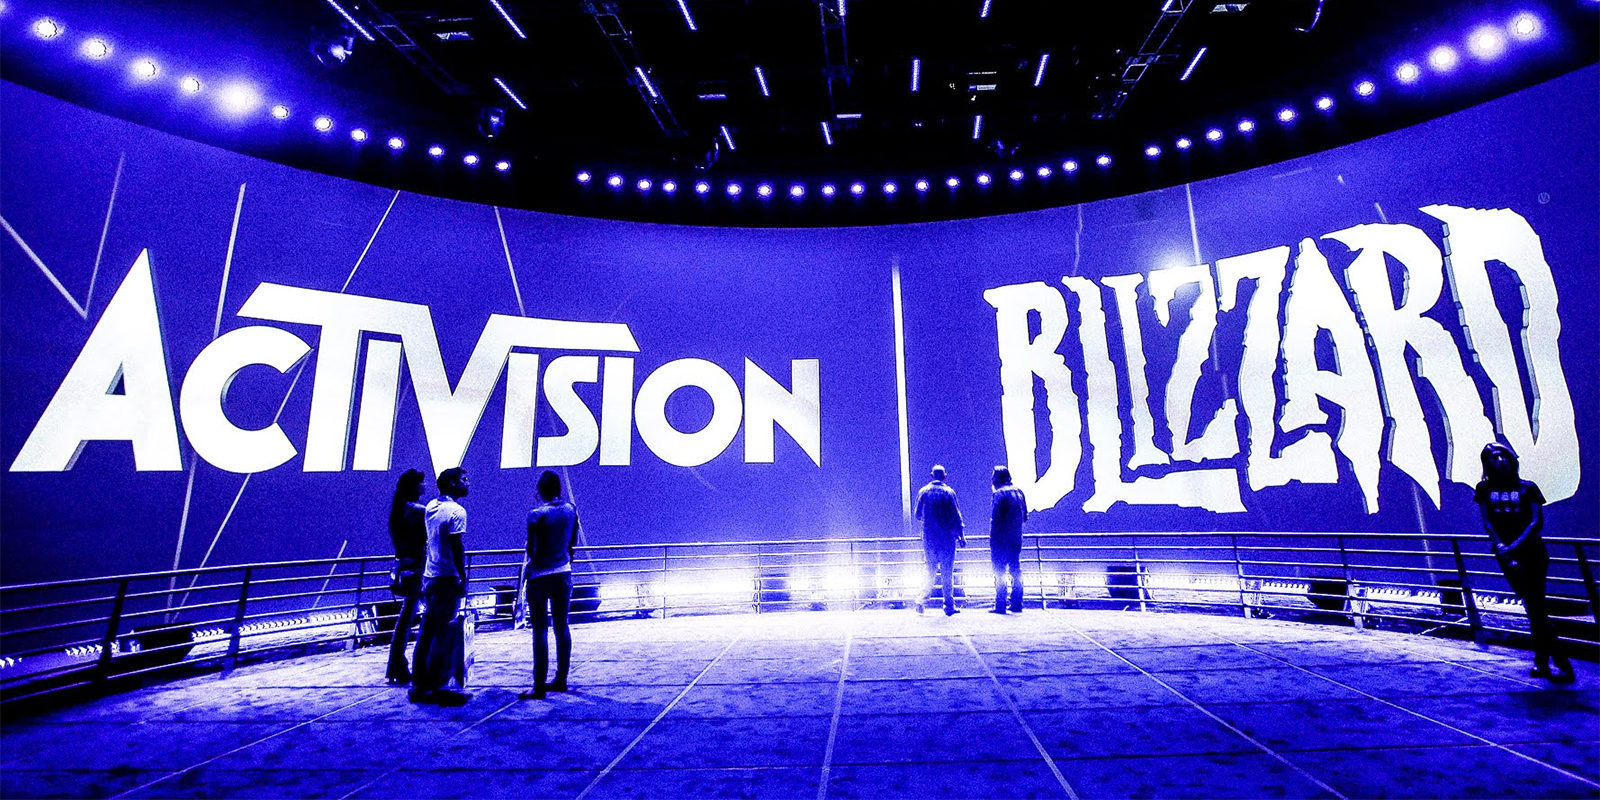 Activision Blizzard es una de las mejores empresas donde trabajar, según Fortune